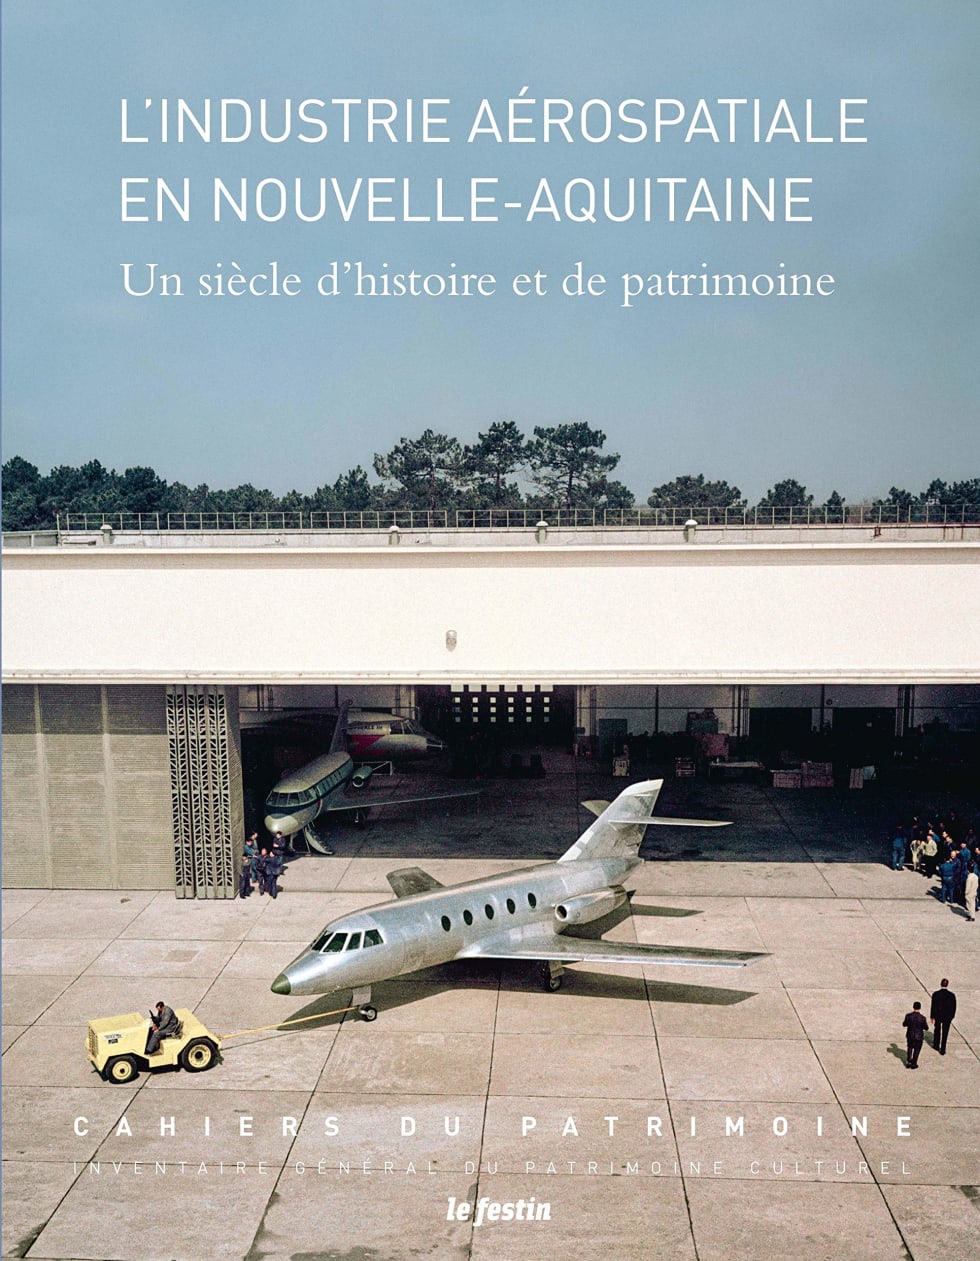 Couverture du livre : « L’Industrie aérospatiale en Nouvelle-Aquitaine, un siècle d’histoire et de patrimoine »